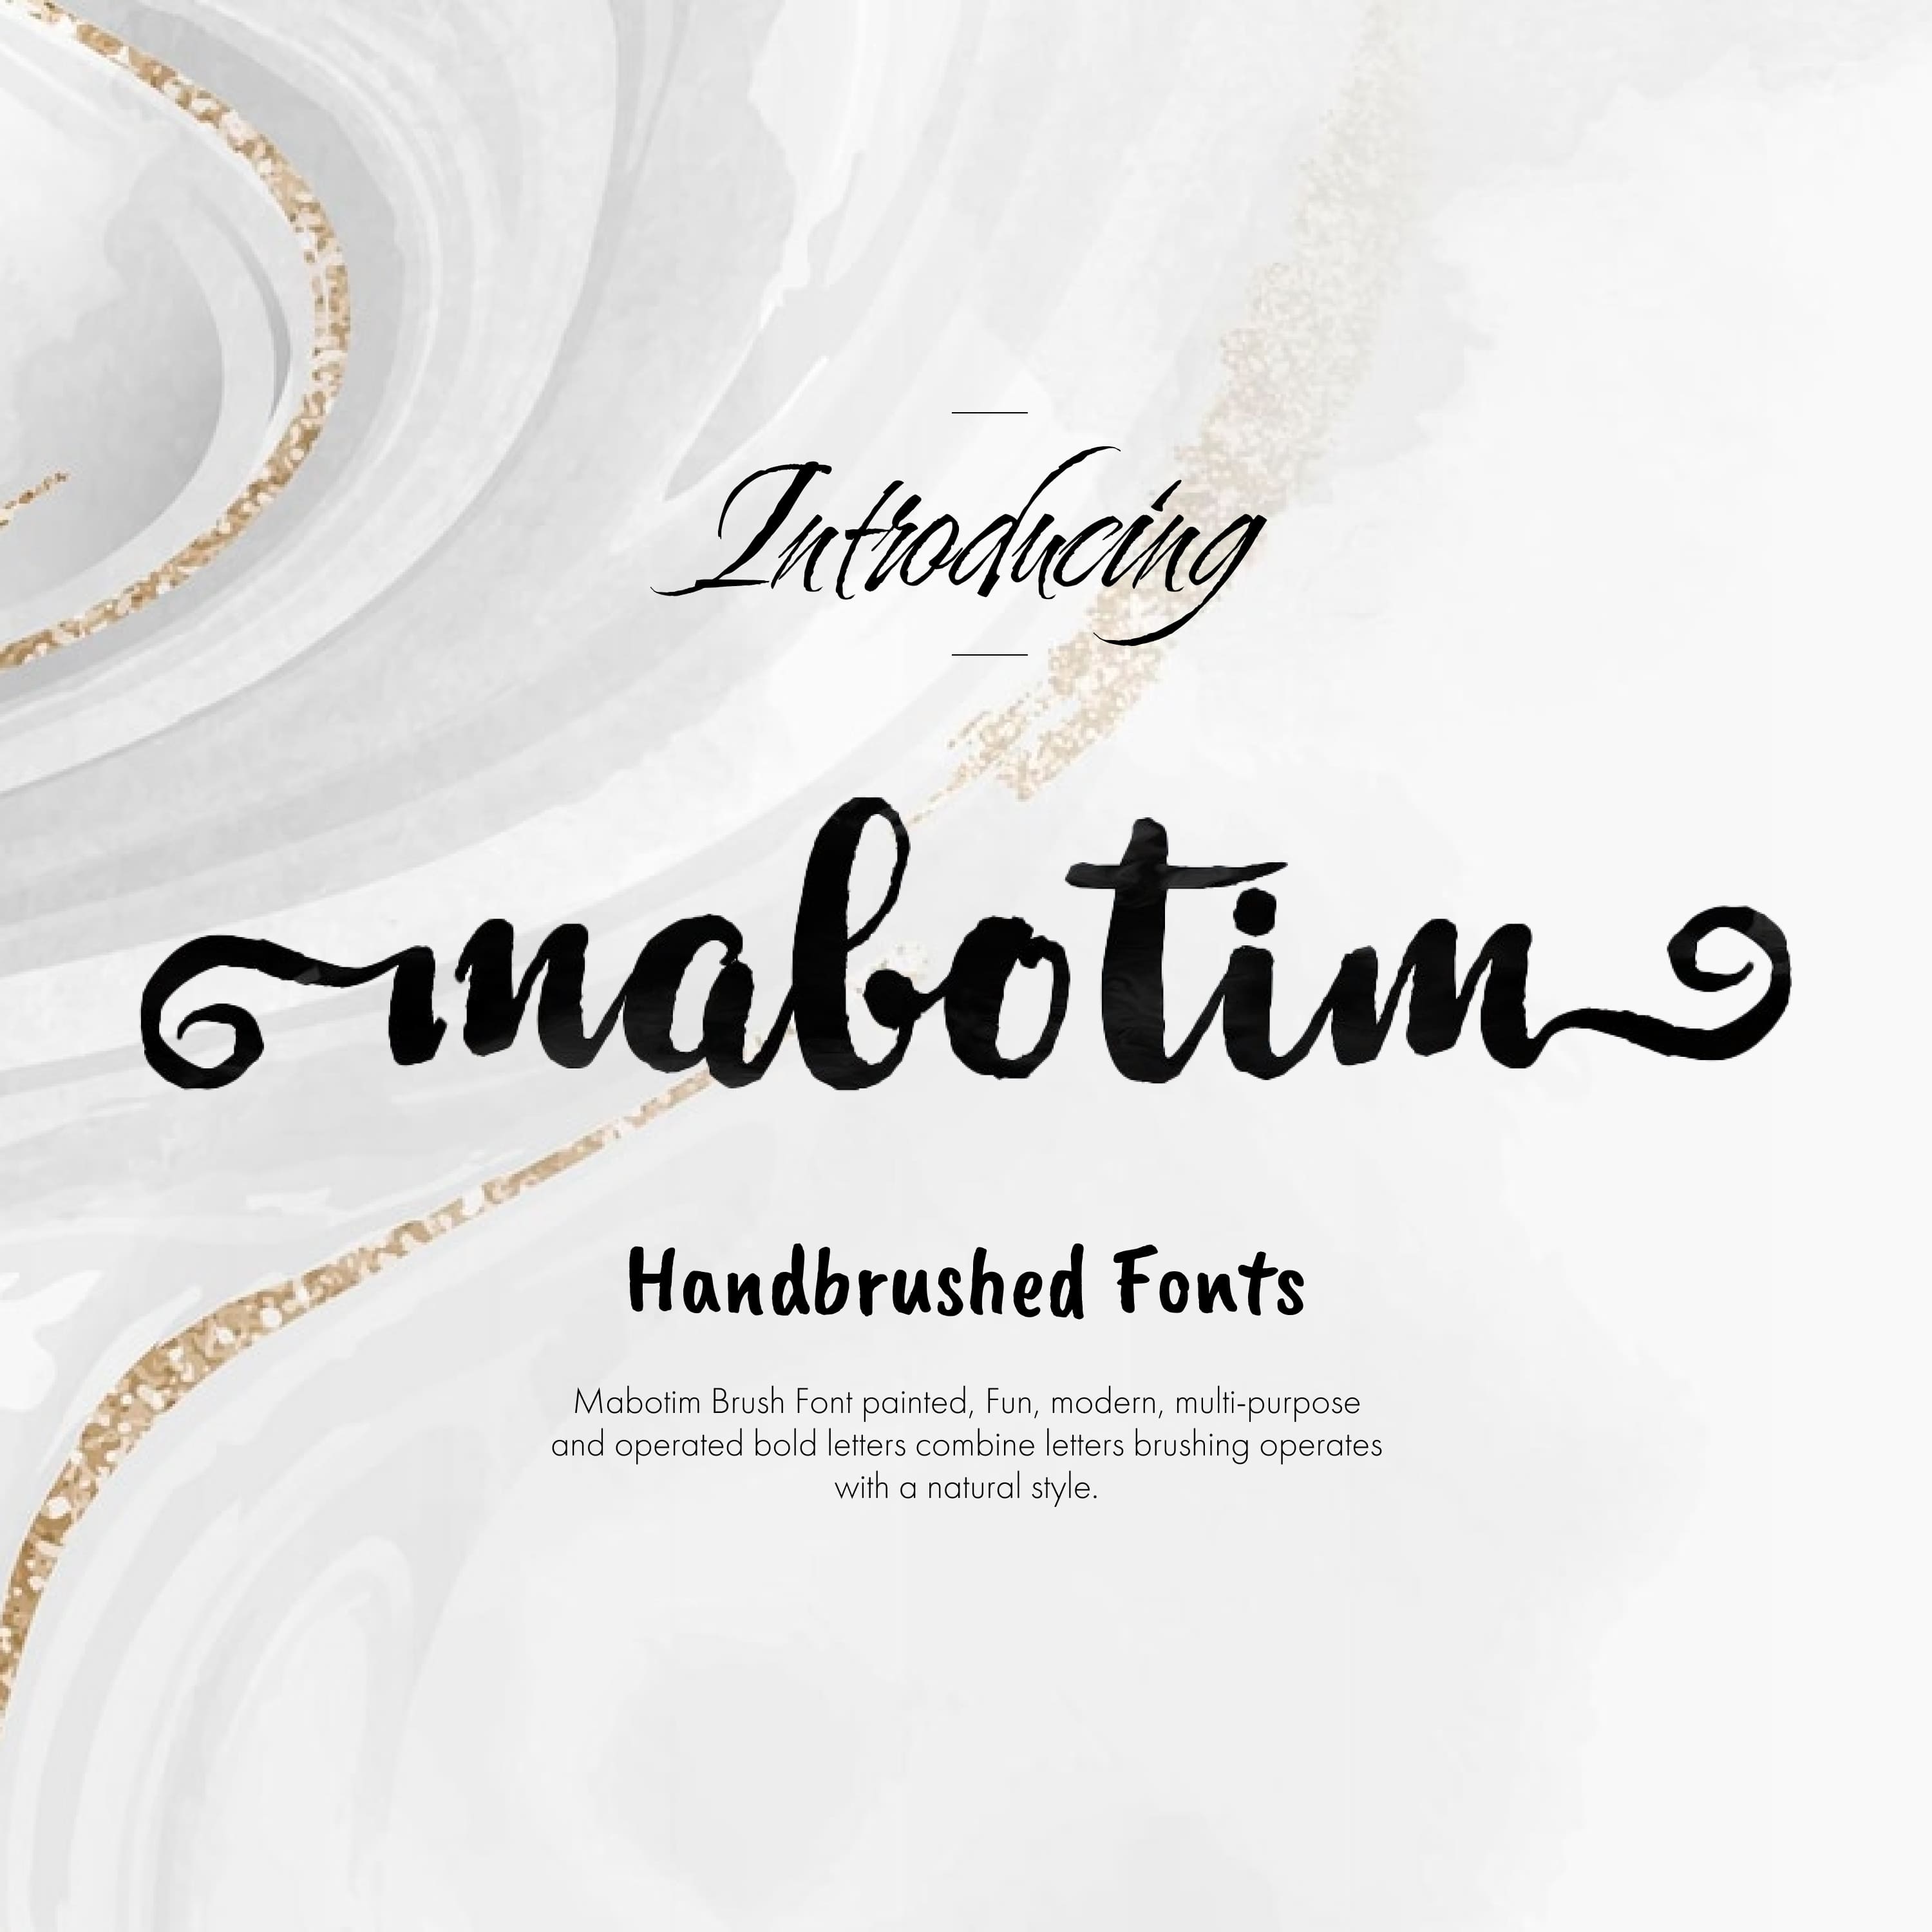 New Mabotim Brush Font cover.